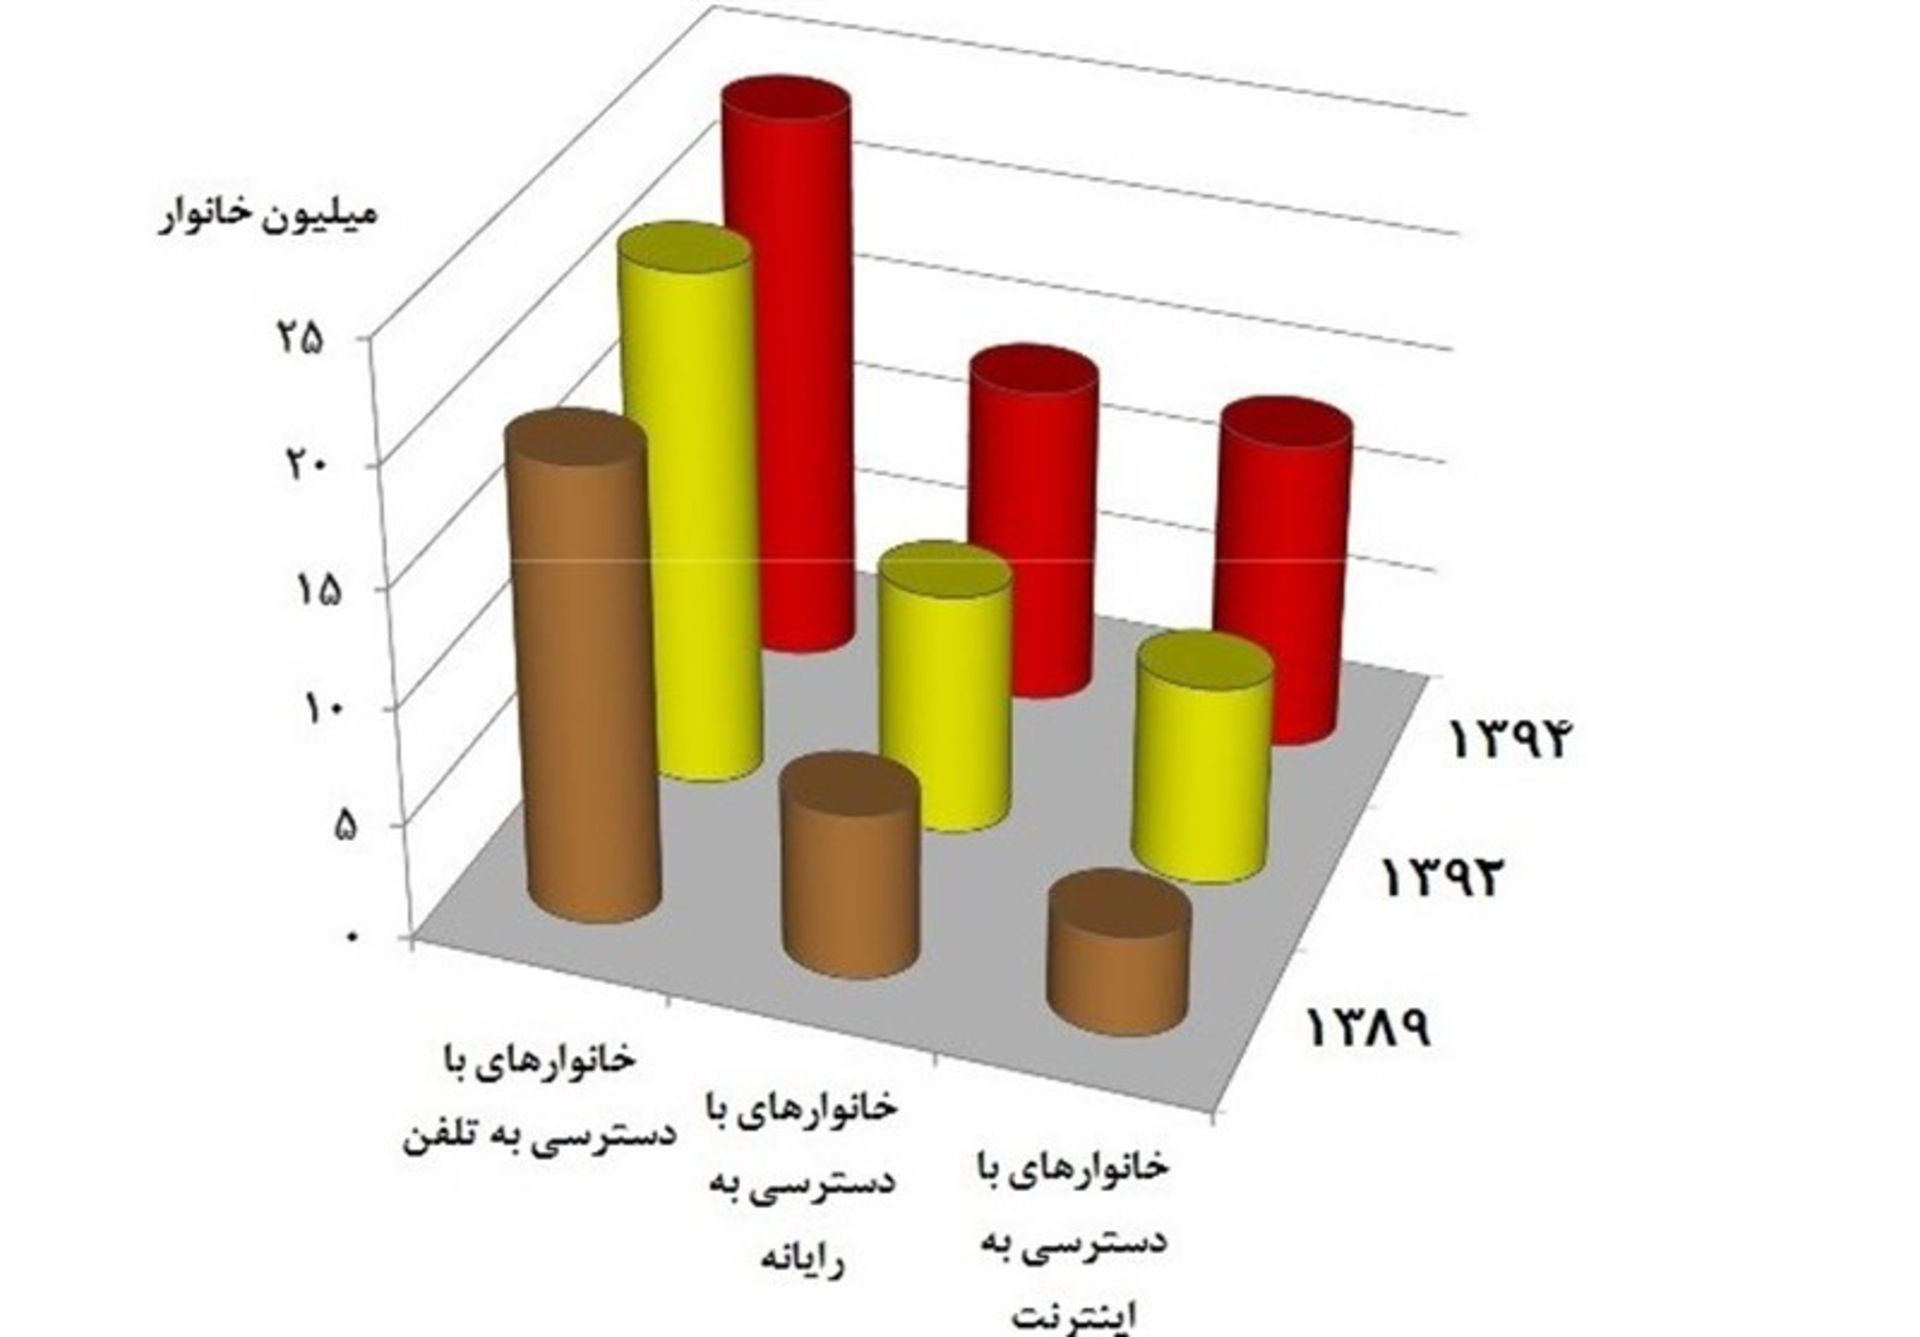 آمار کاربران موبایل اینترنت و رایانه در ایران